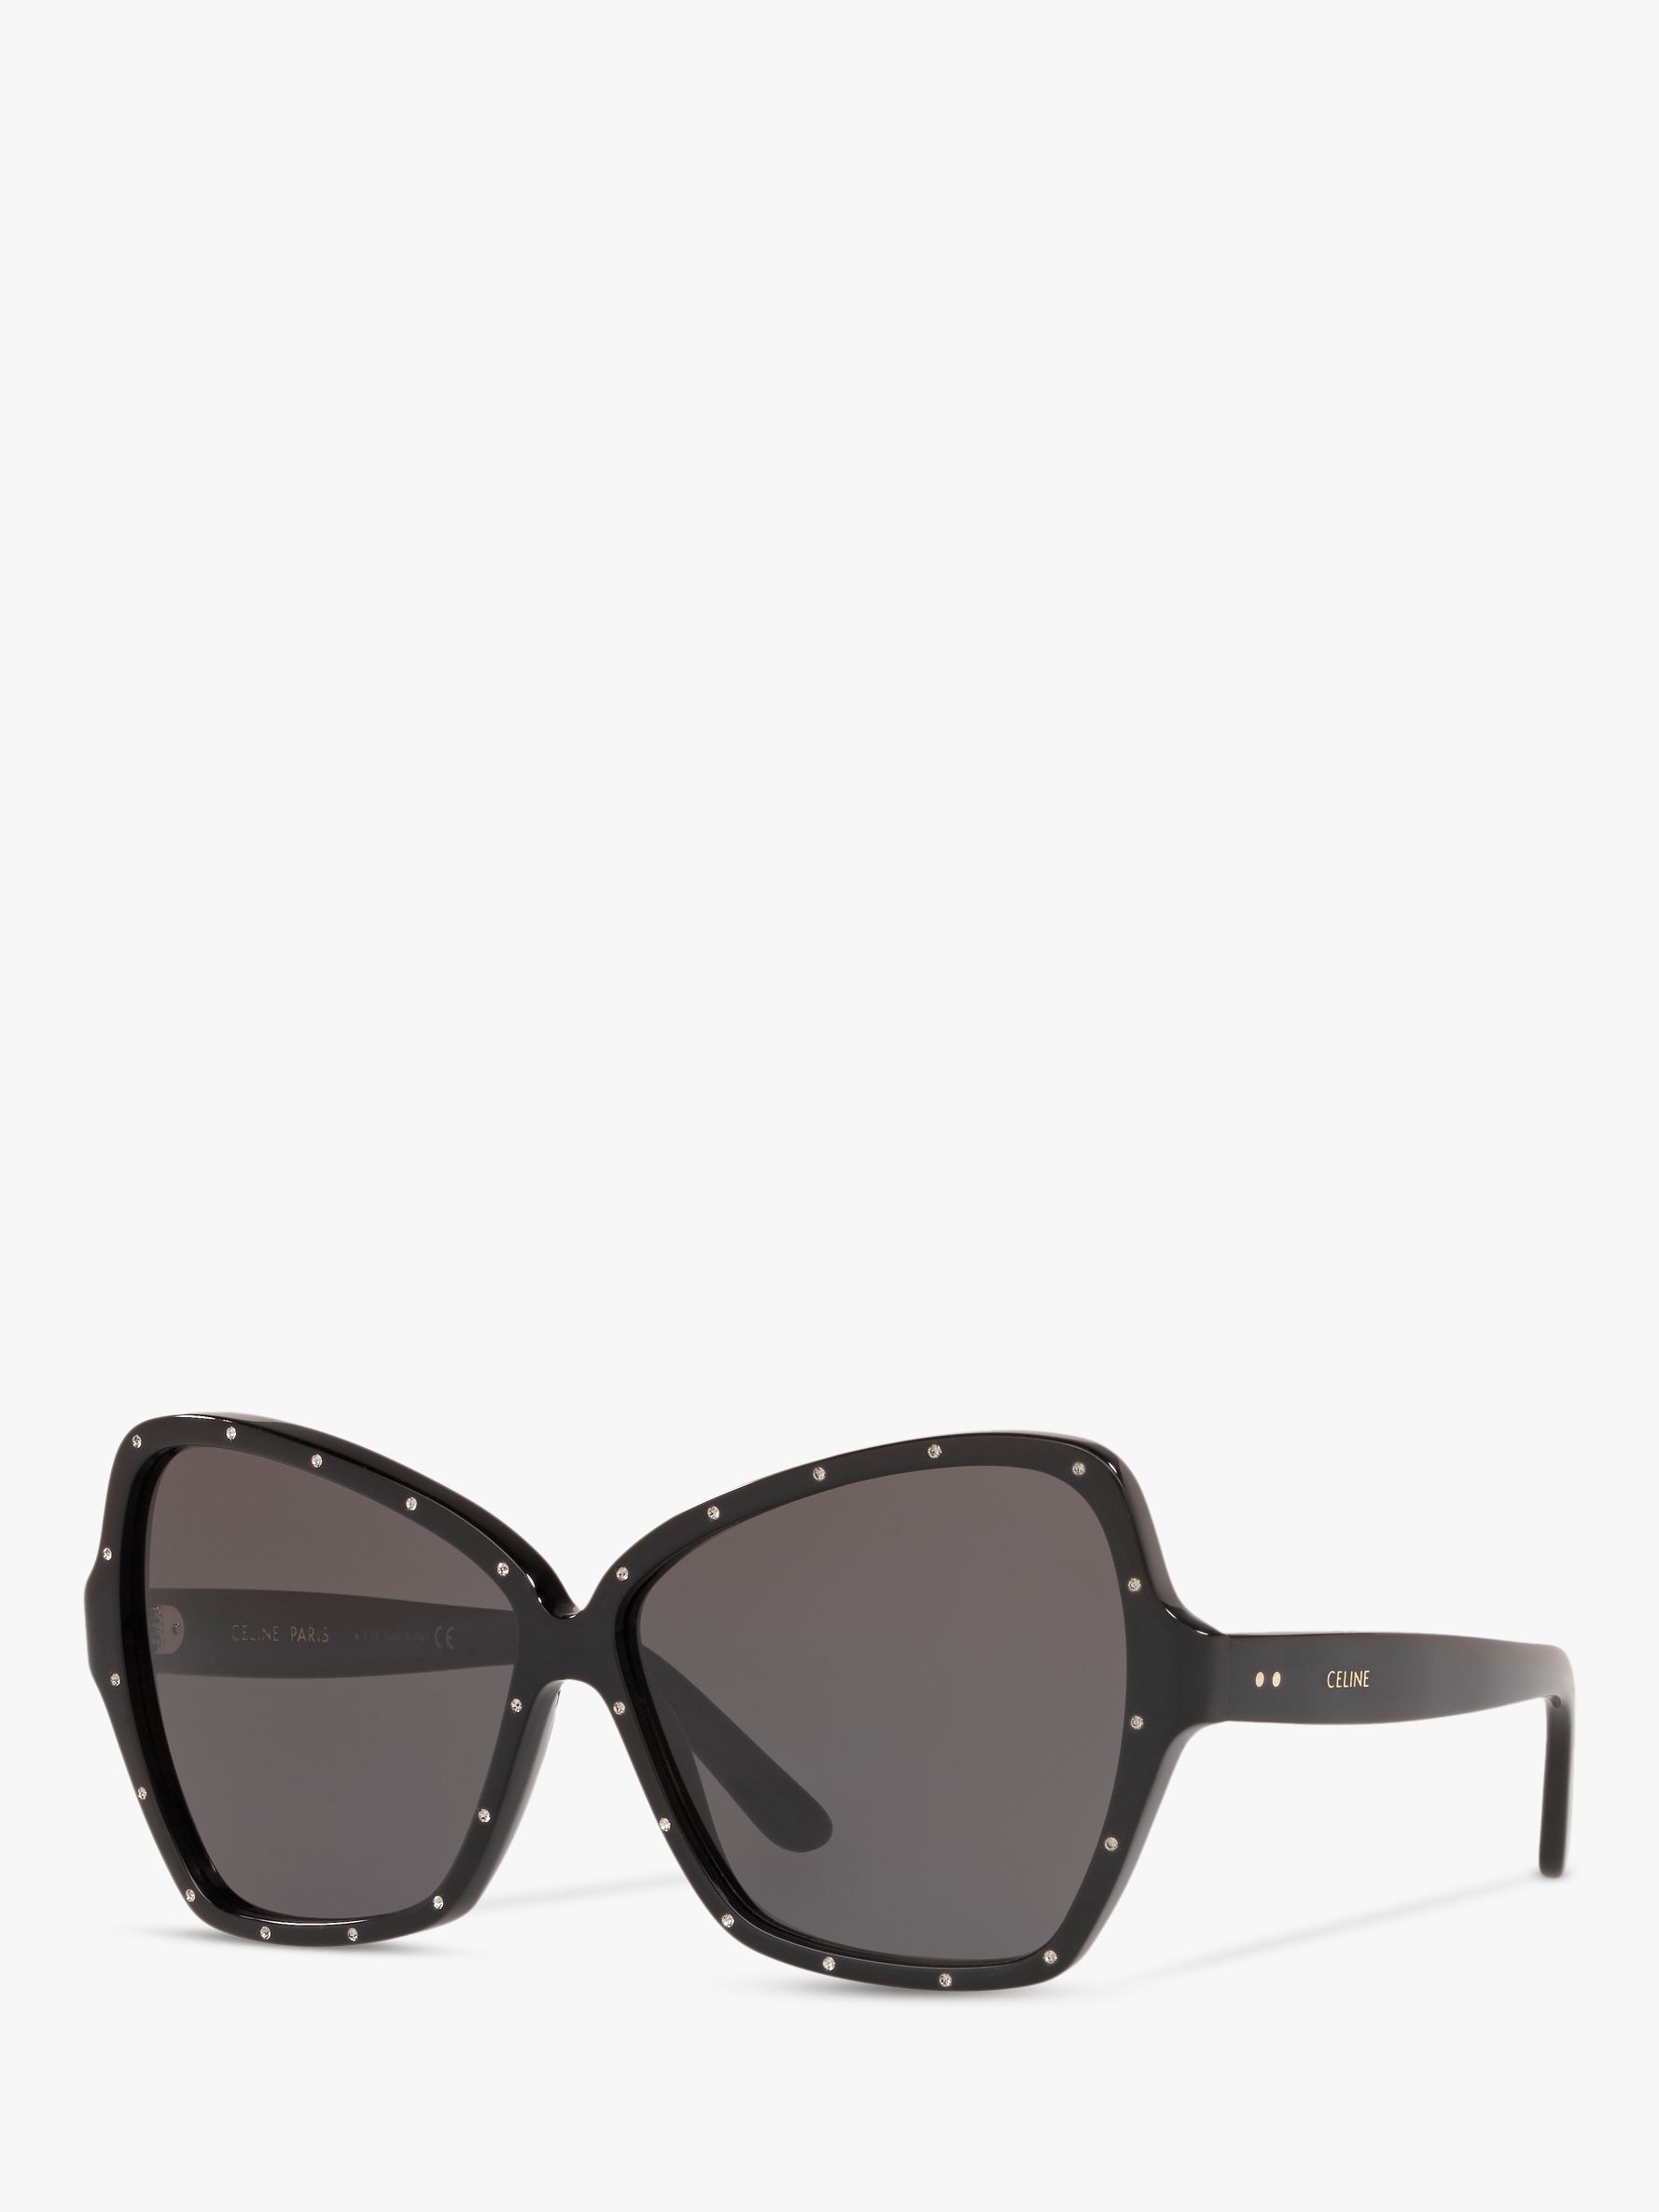 celine studded sunglasses